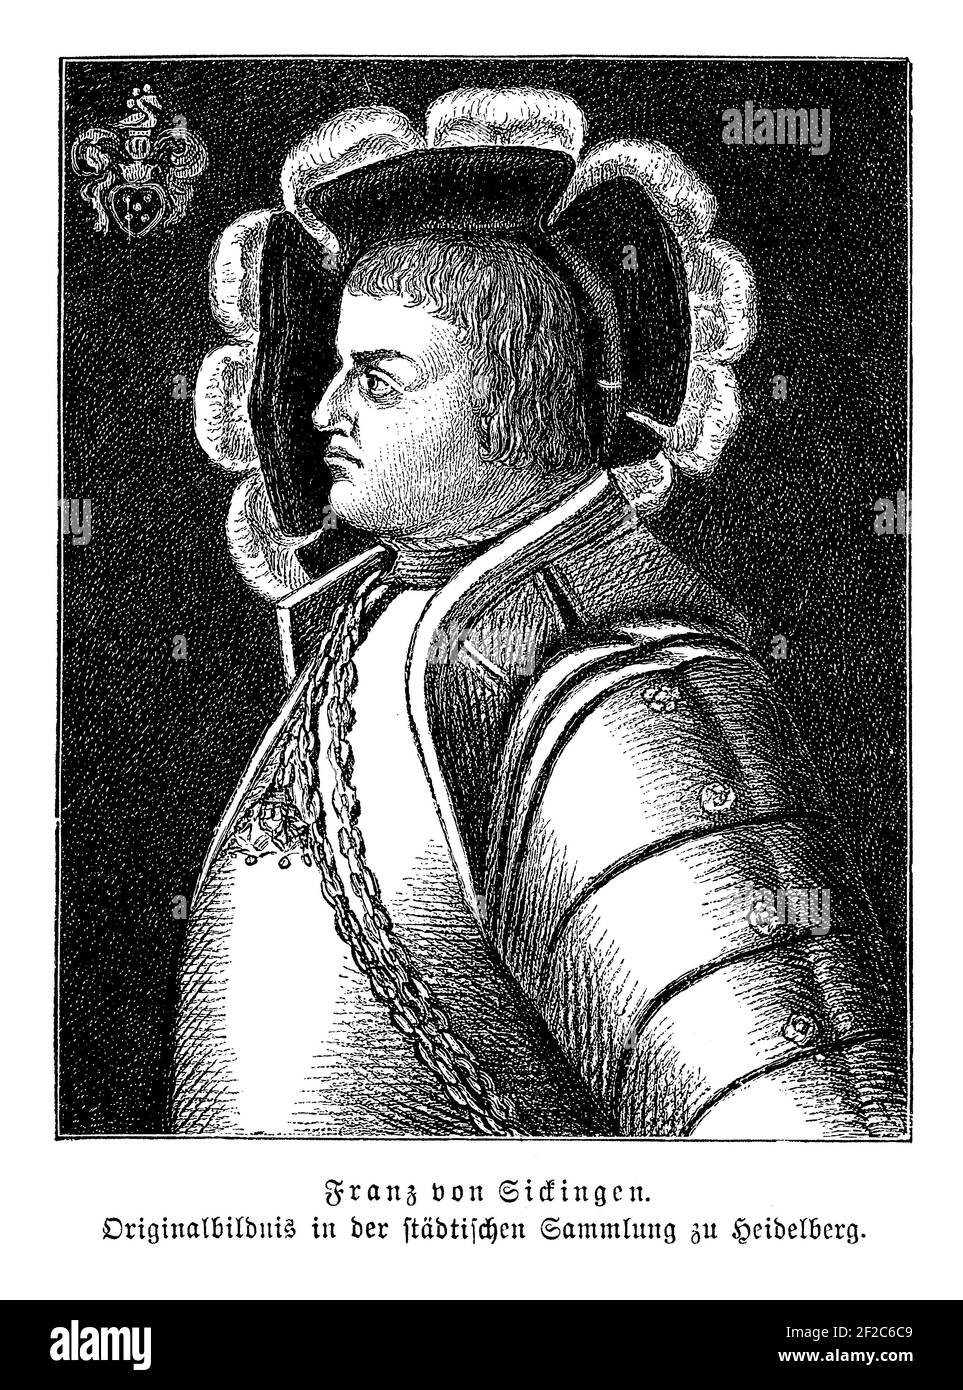 Franz von Sickingen o Francesco di Sickingen ( 1481 - 1523) Leader tedesco del cavaliere della rivolta dei Cavalieri e sostenitore di La riforma Foto Stock